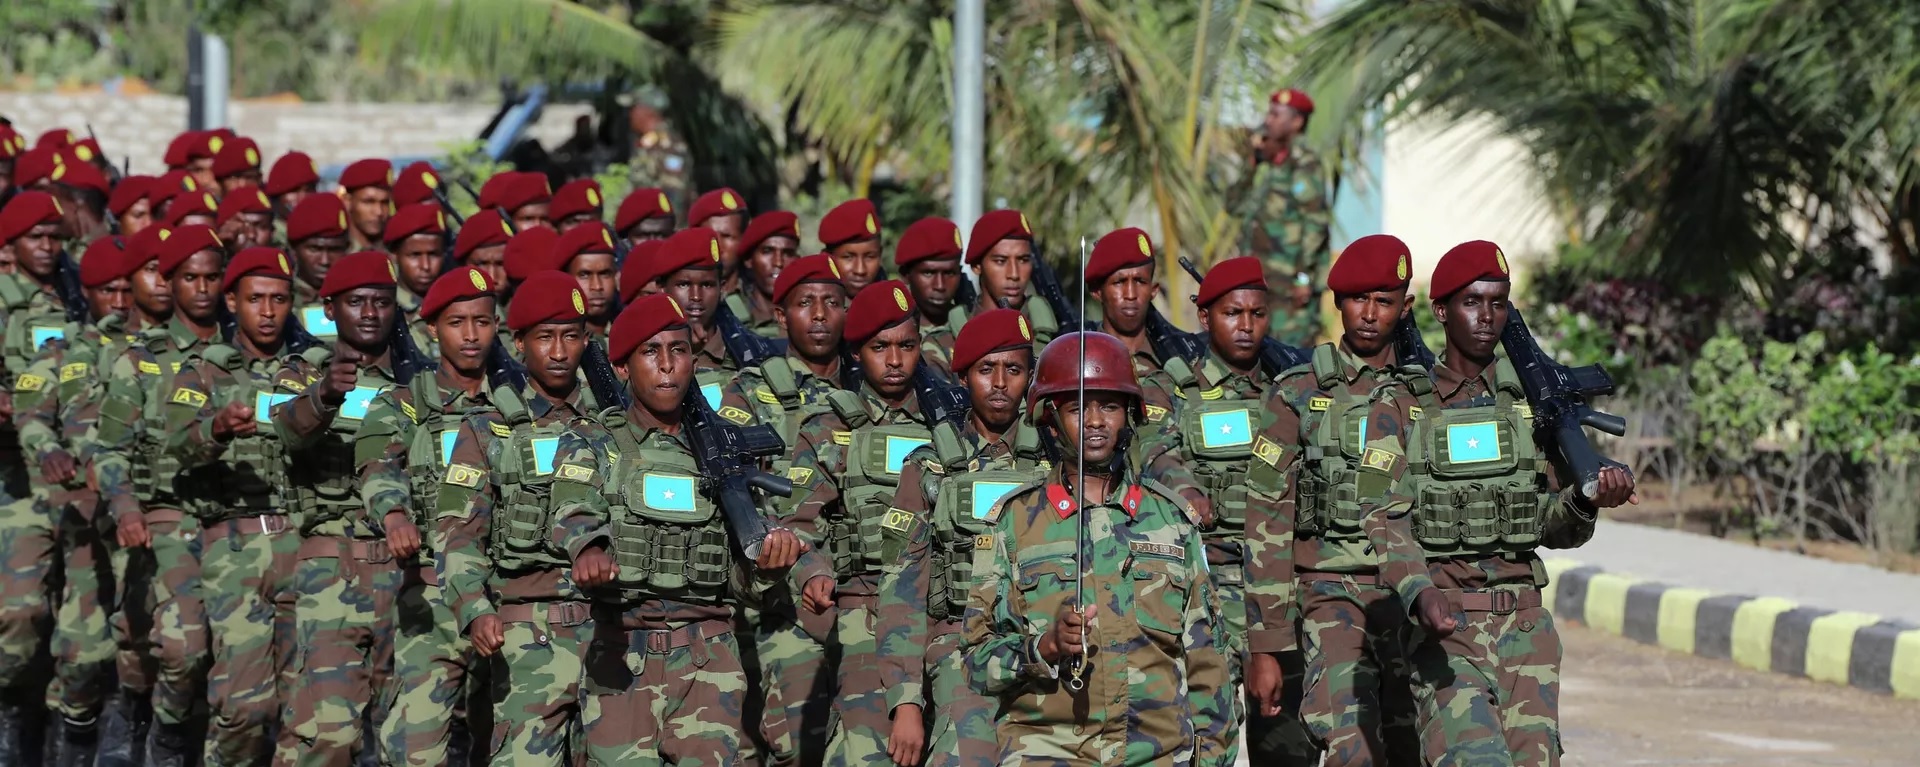 , بعد تسلمها المهام الأمنية والعسكرية من &#8220;أتميس&#8221;.. هل تنجح الحكومة الصومالية في مواجهة حركة الشباب؟